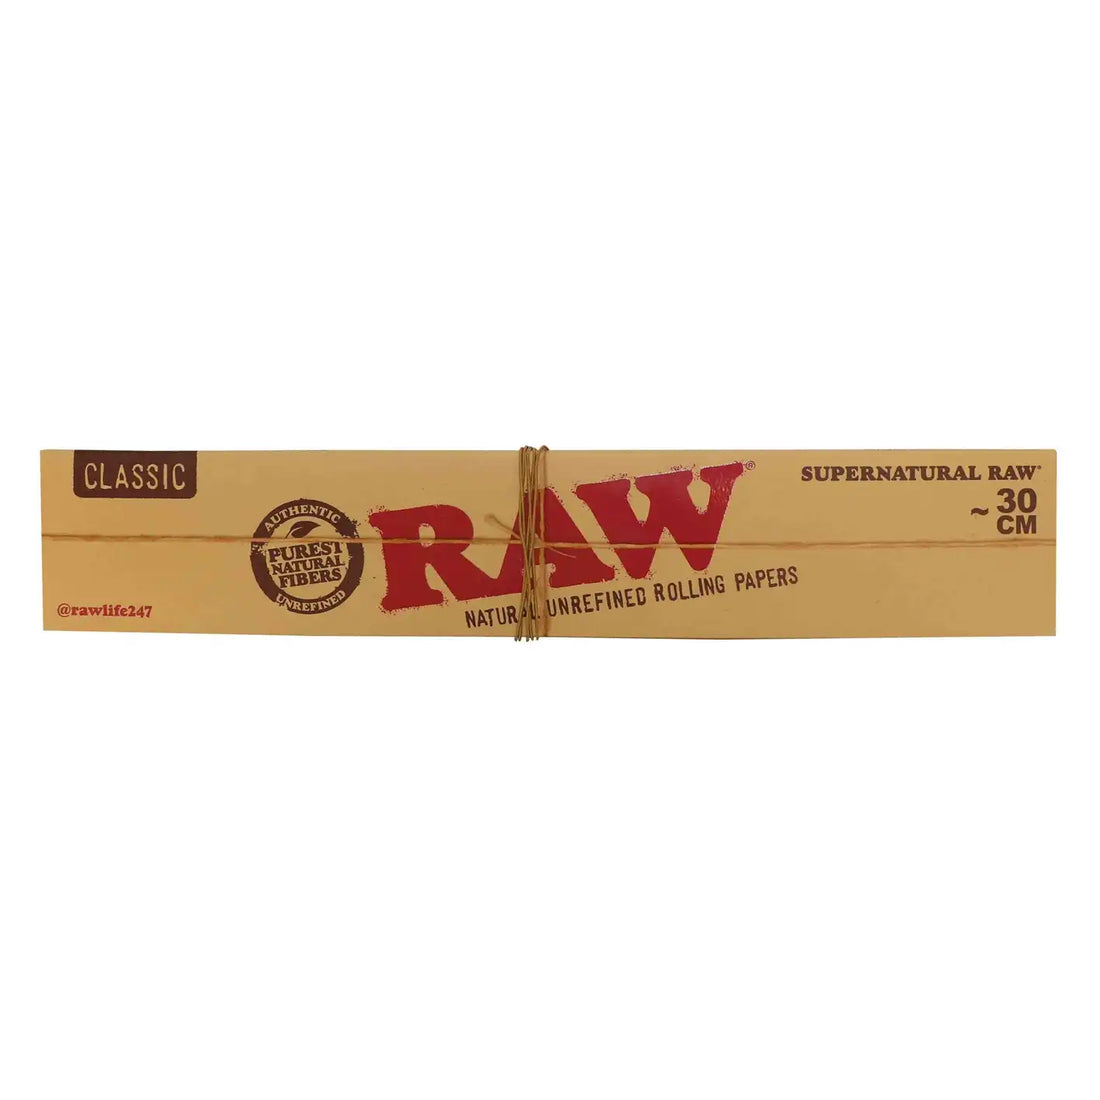 Raw Supernatural ~30 cm